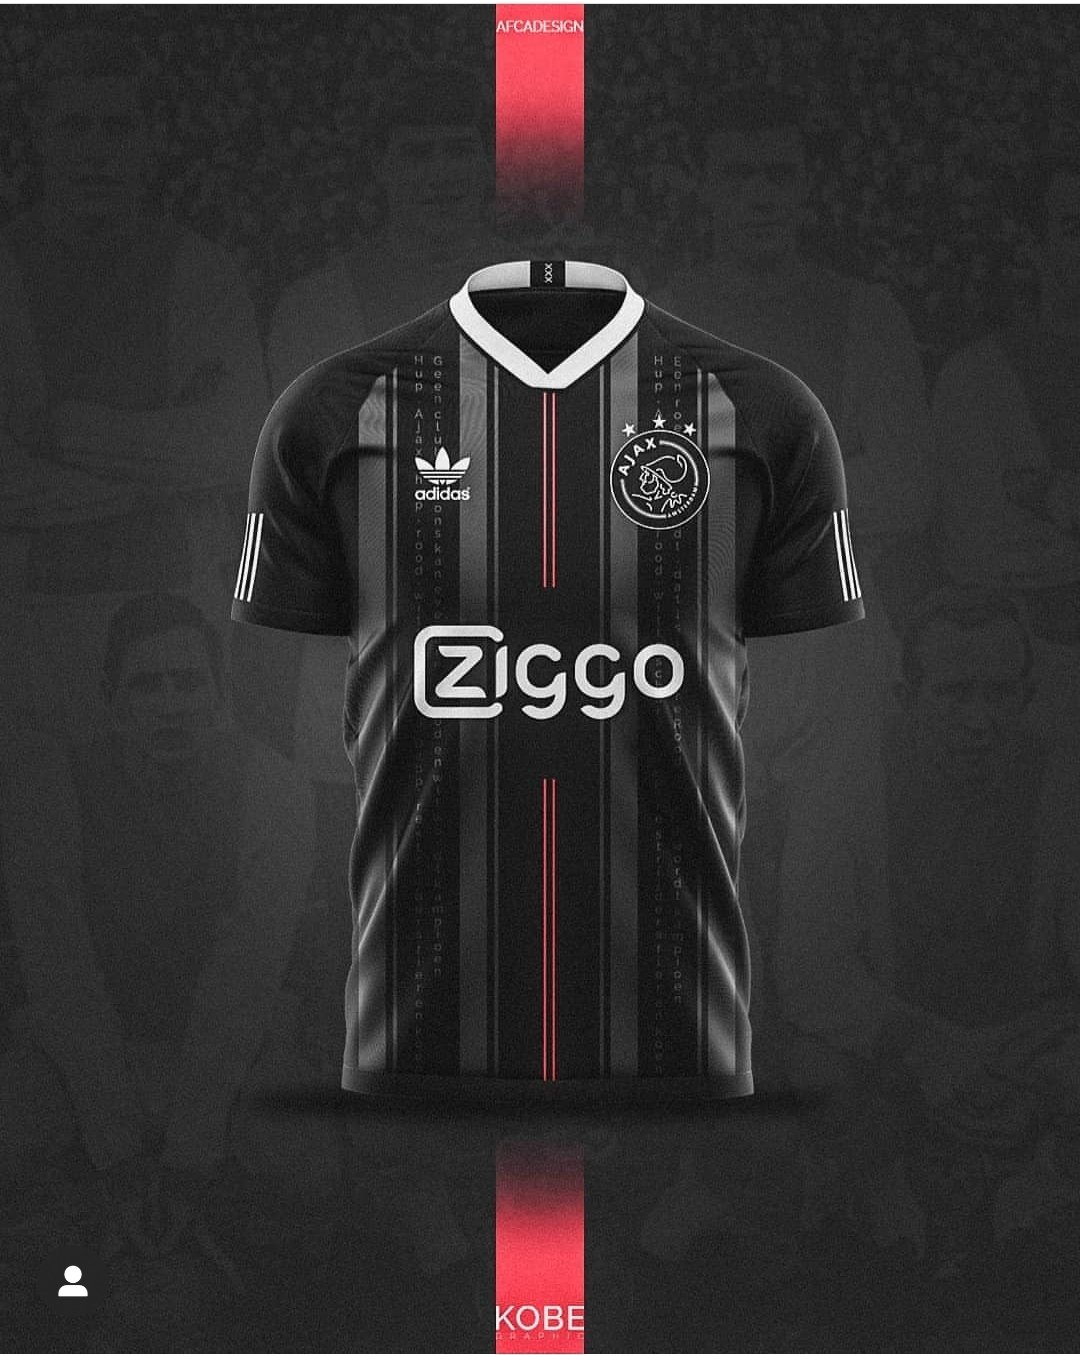 Handig applaus Keer terug Passie Voor Ajax on Twitter: "Worden dit de nieuwe uitshirts van Ajax? #Ajax  #Awayshirt #UitshirtAjax https://t.co/PSBBNb5aRO" / Twitter